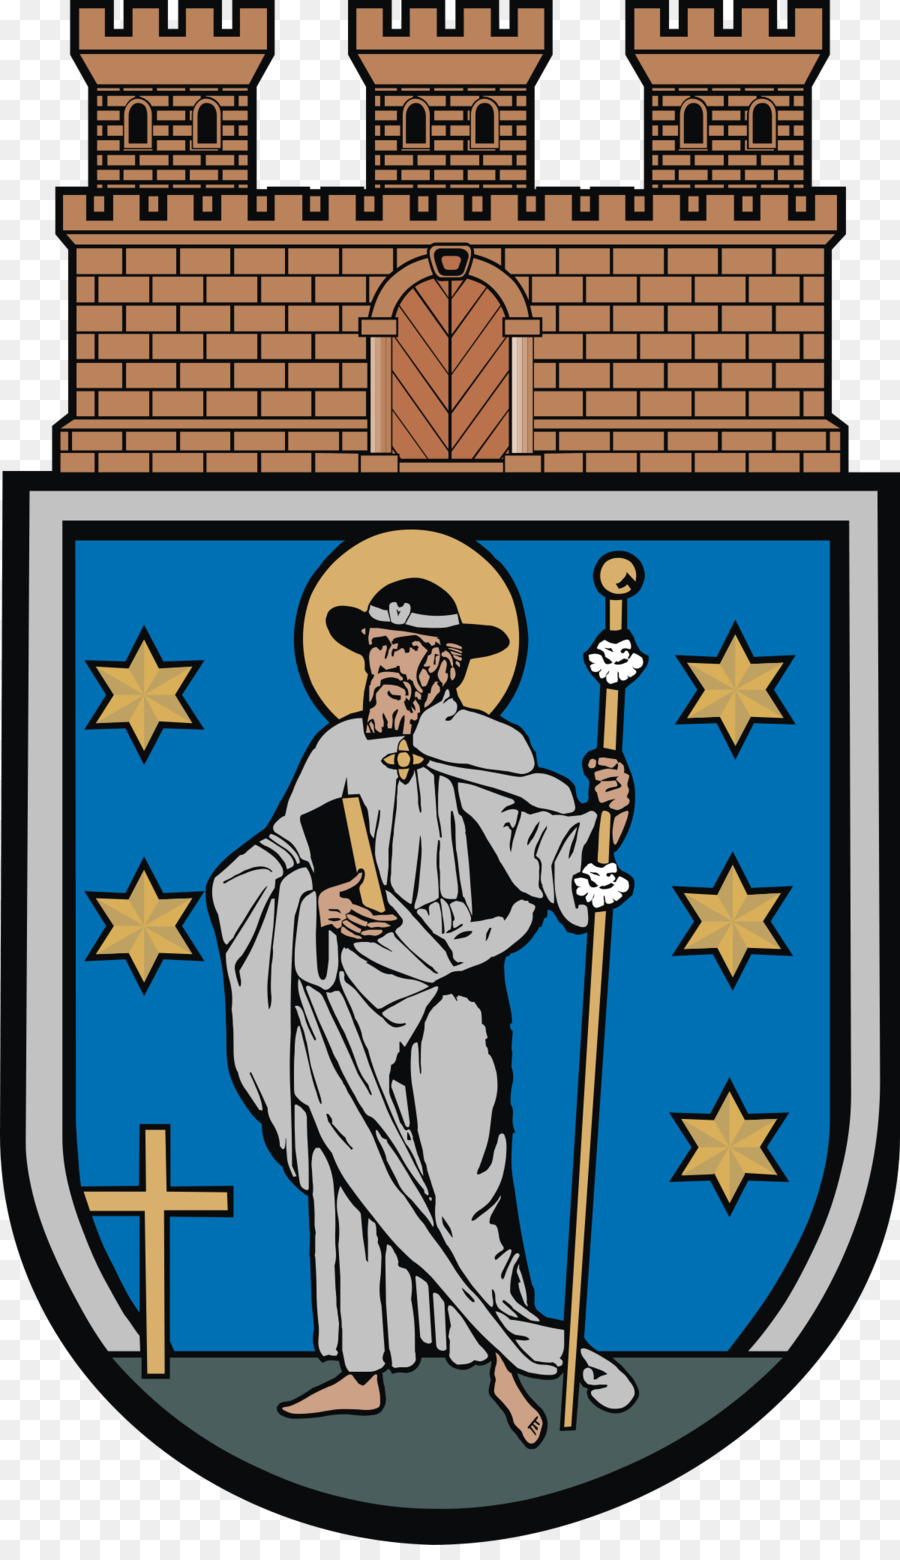 Giebnia Comune di Barcin Coat of arms Kuyavian-Pomeranian Voivodeship, Poland - 